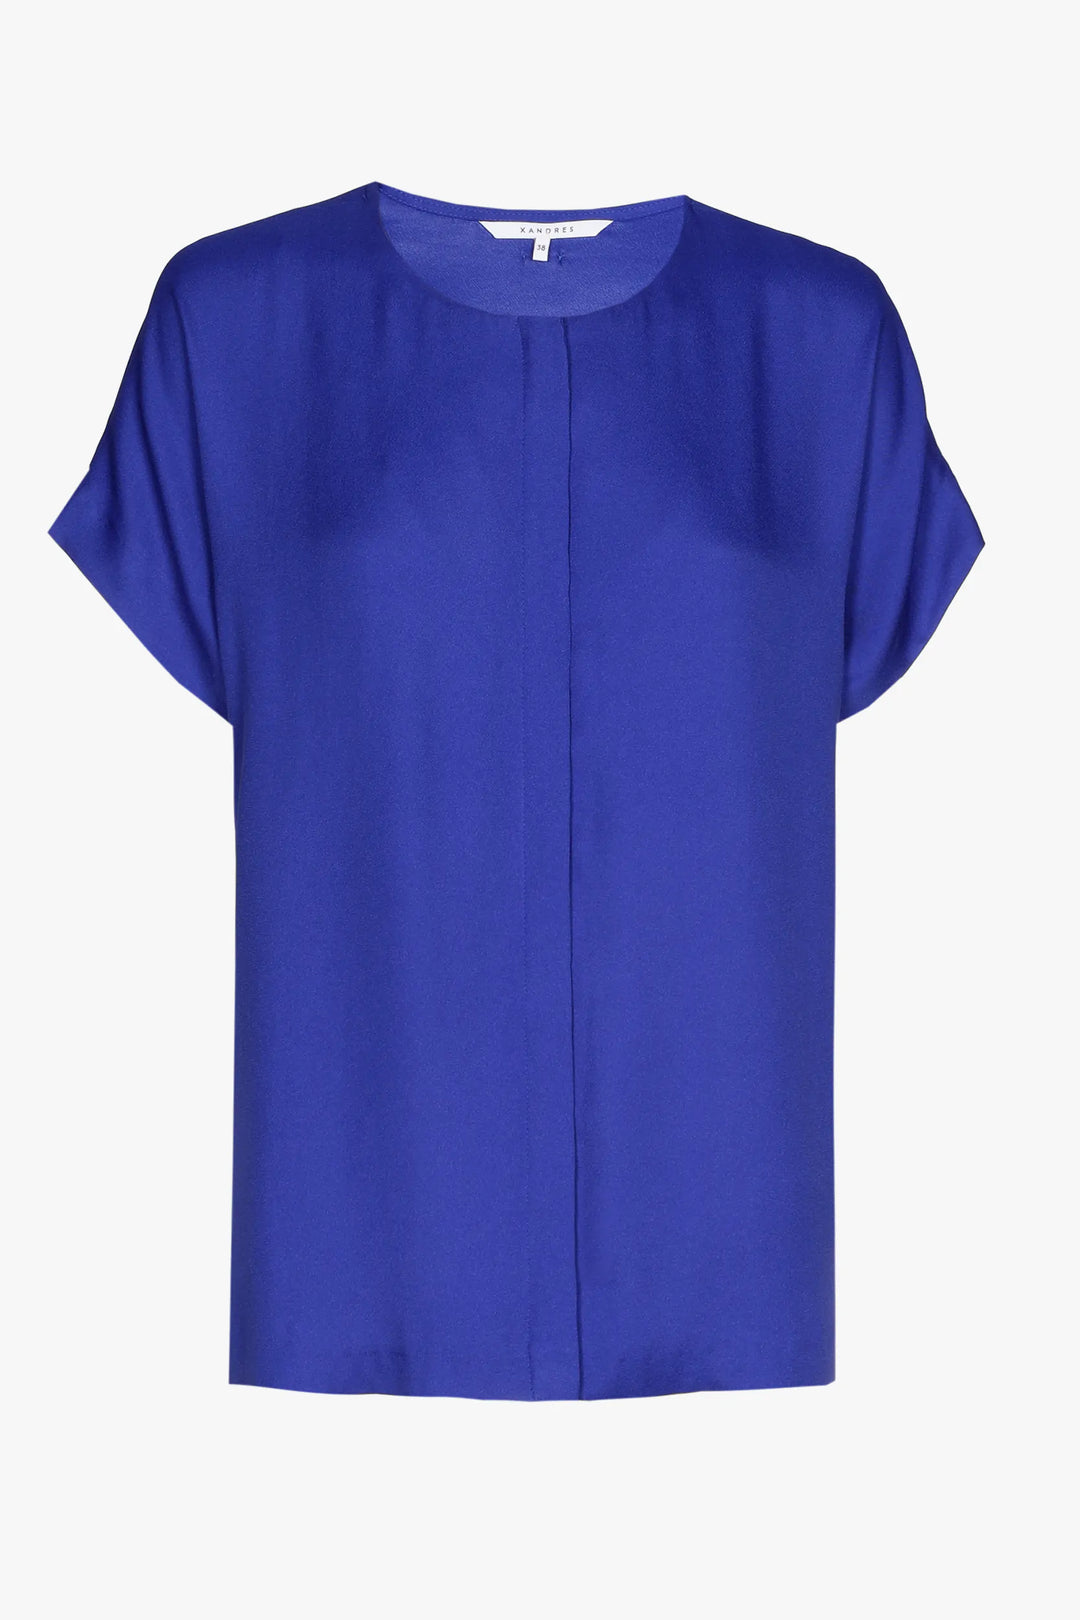 luchtige blouse in royal ink - xandres - - grote maten - dameskleding - kledingwinkel - herent - leuven